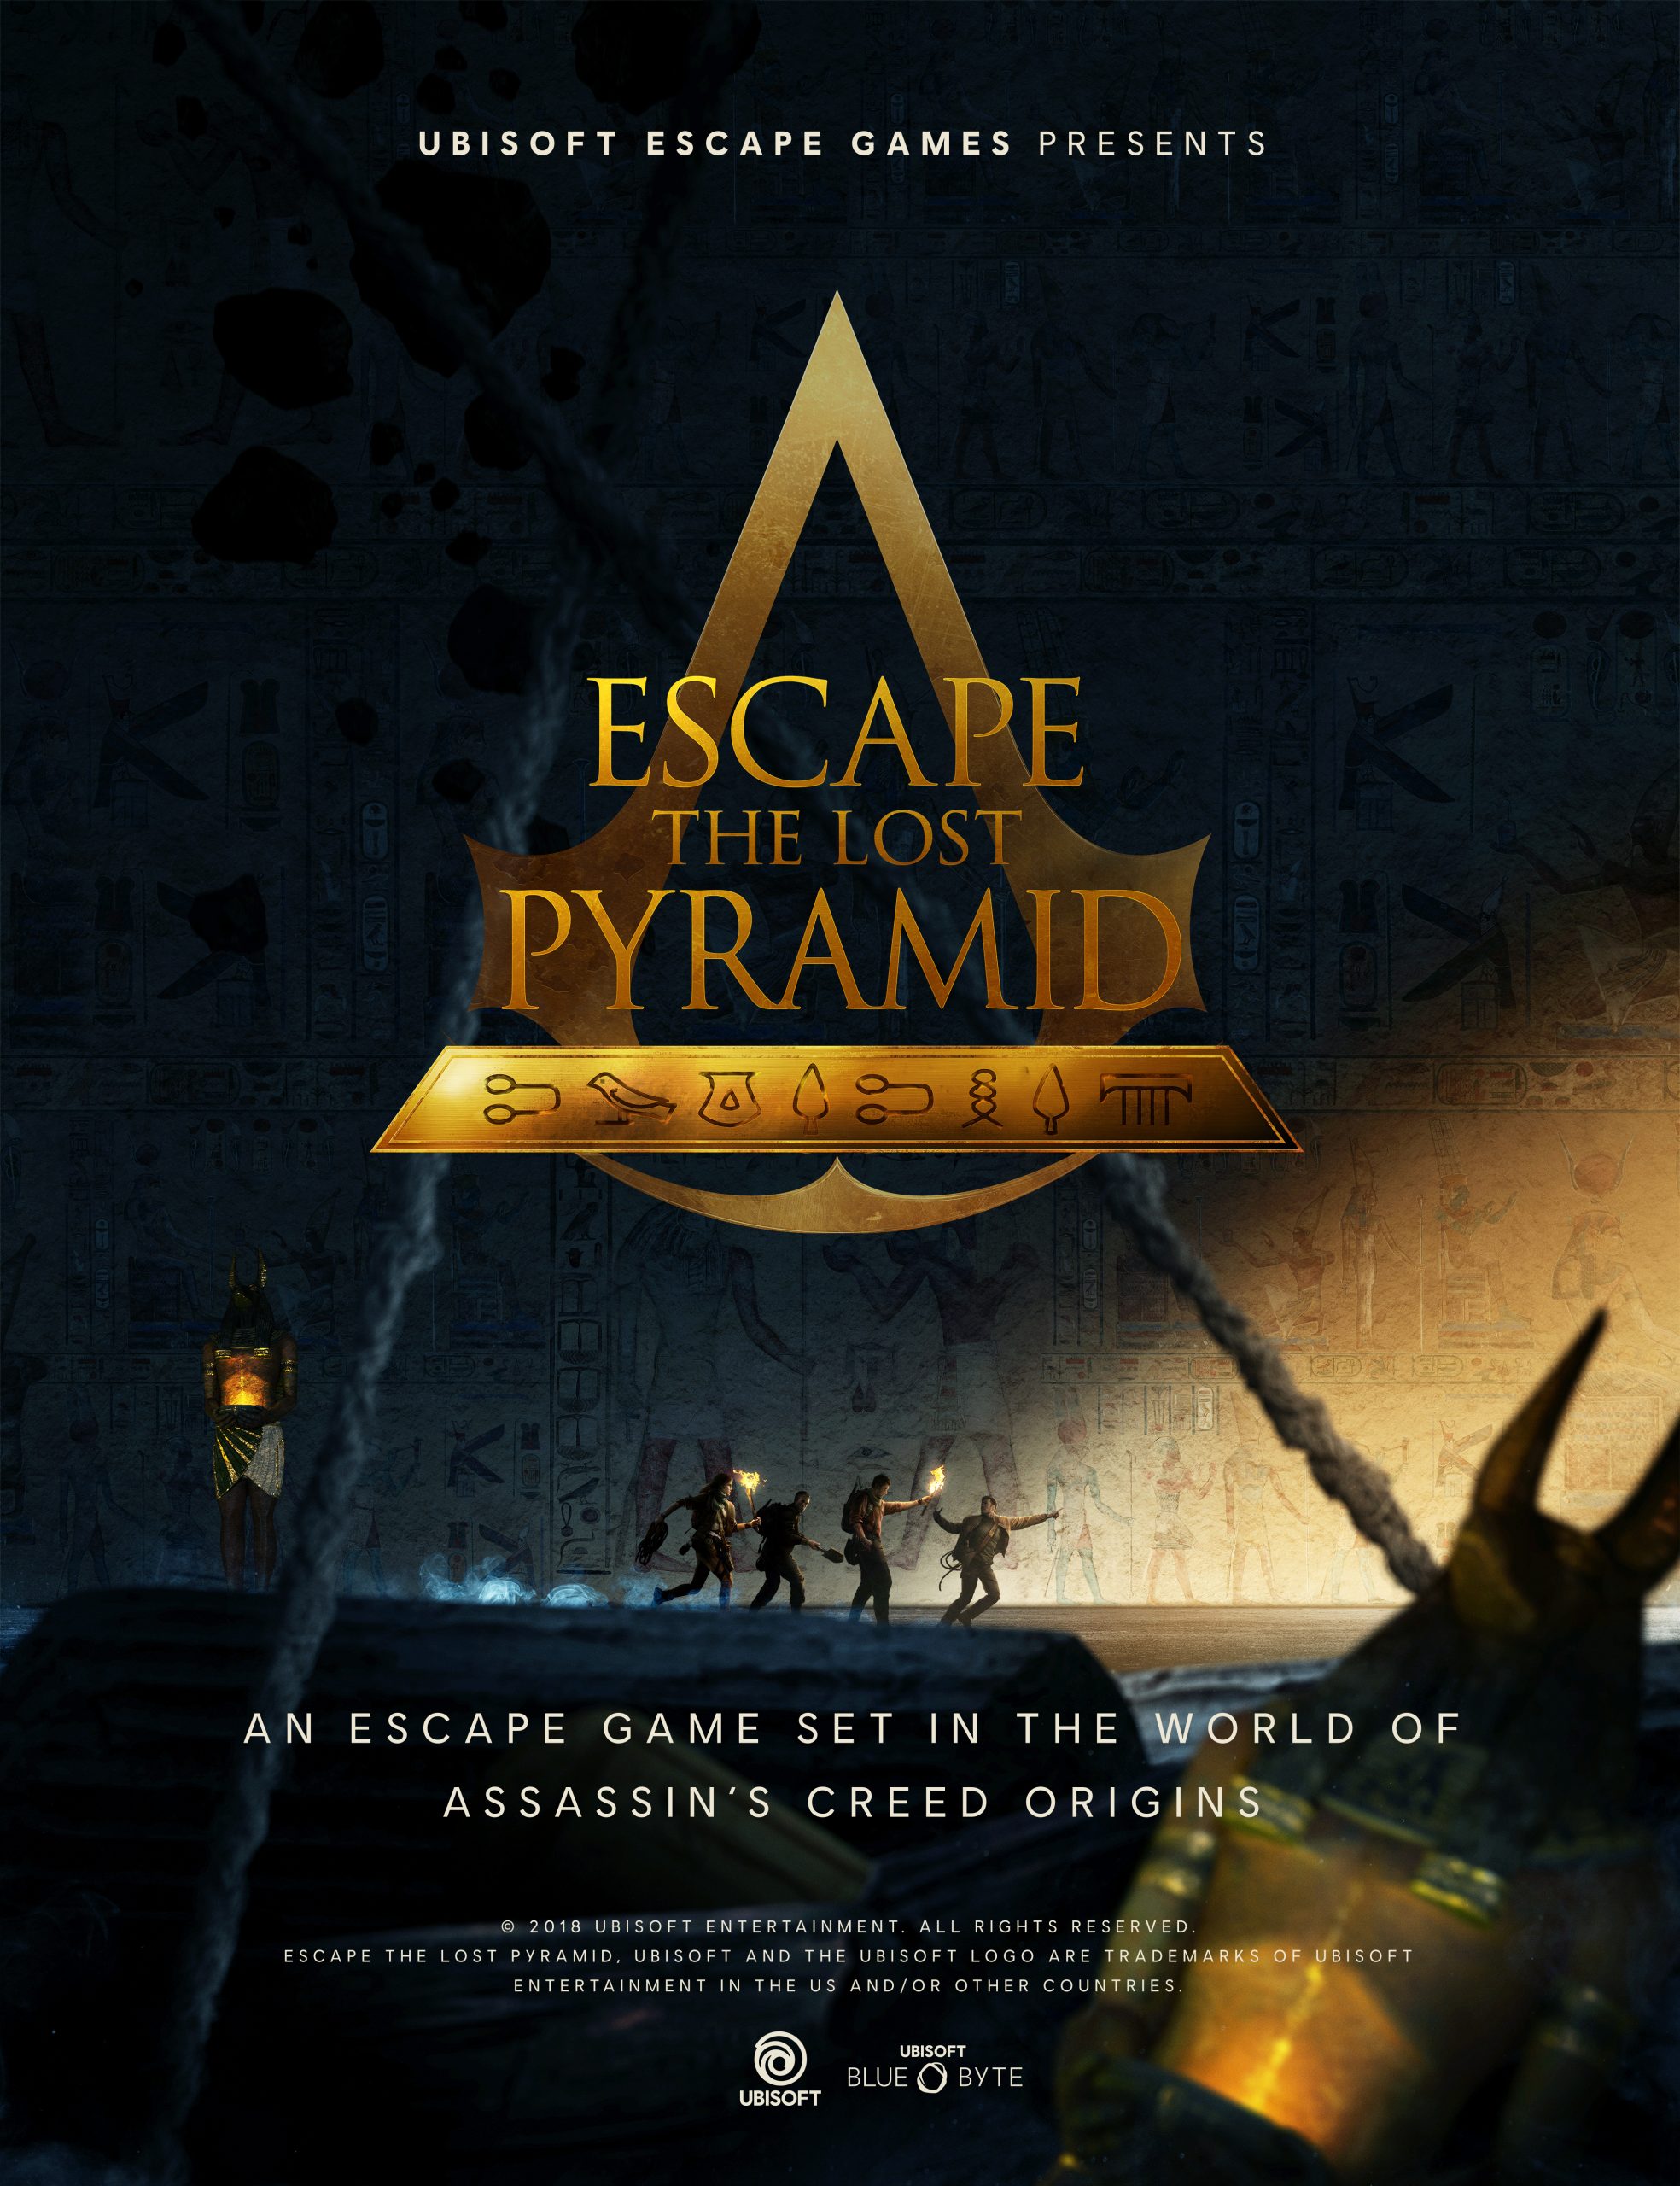 Escape room com realidade virtual baseada em Assassin's Creed - EP GRUPO   Conteúdo - Mentoria - Eventos - Marcas e Personagens - Brinquedo e Papelaria